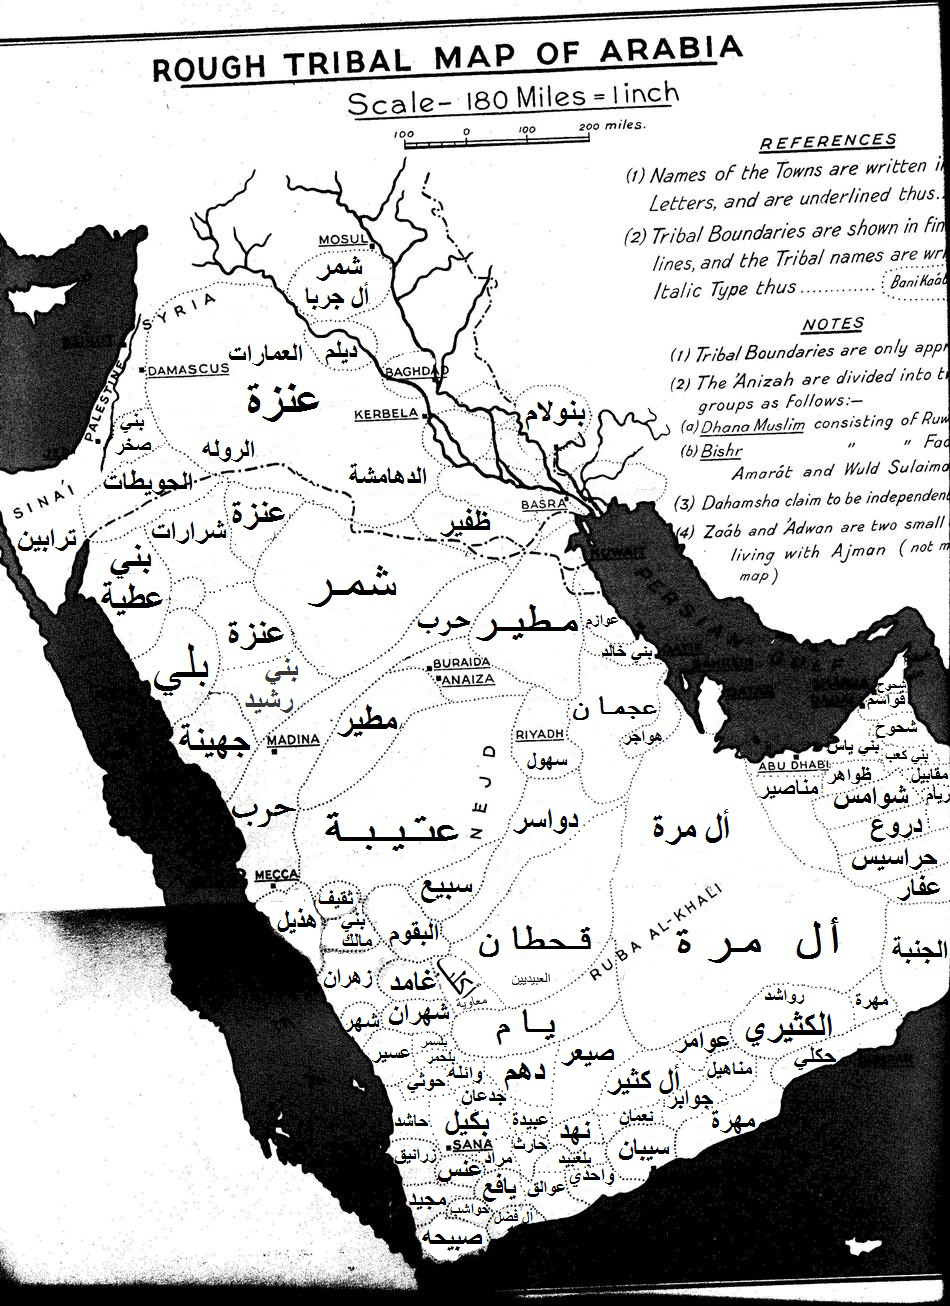 خريطة قبائل الجزيرة العربية من الرحالة الانجليزي النسابون العرب